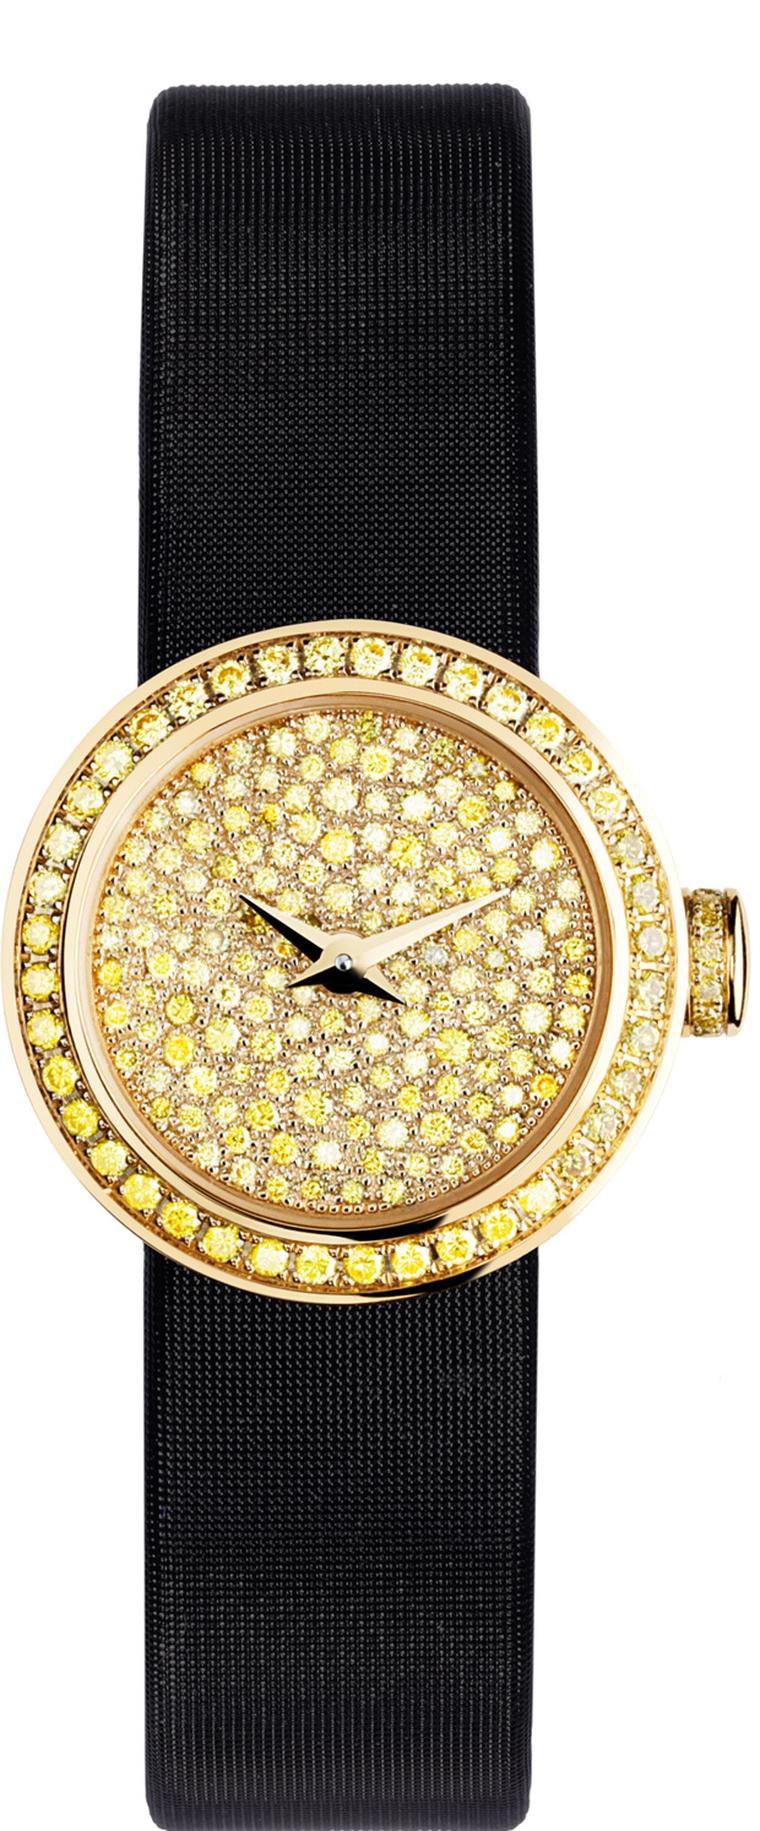 La Mini D de Dior watch in yellow diamonds